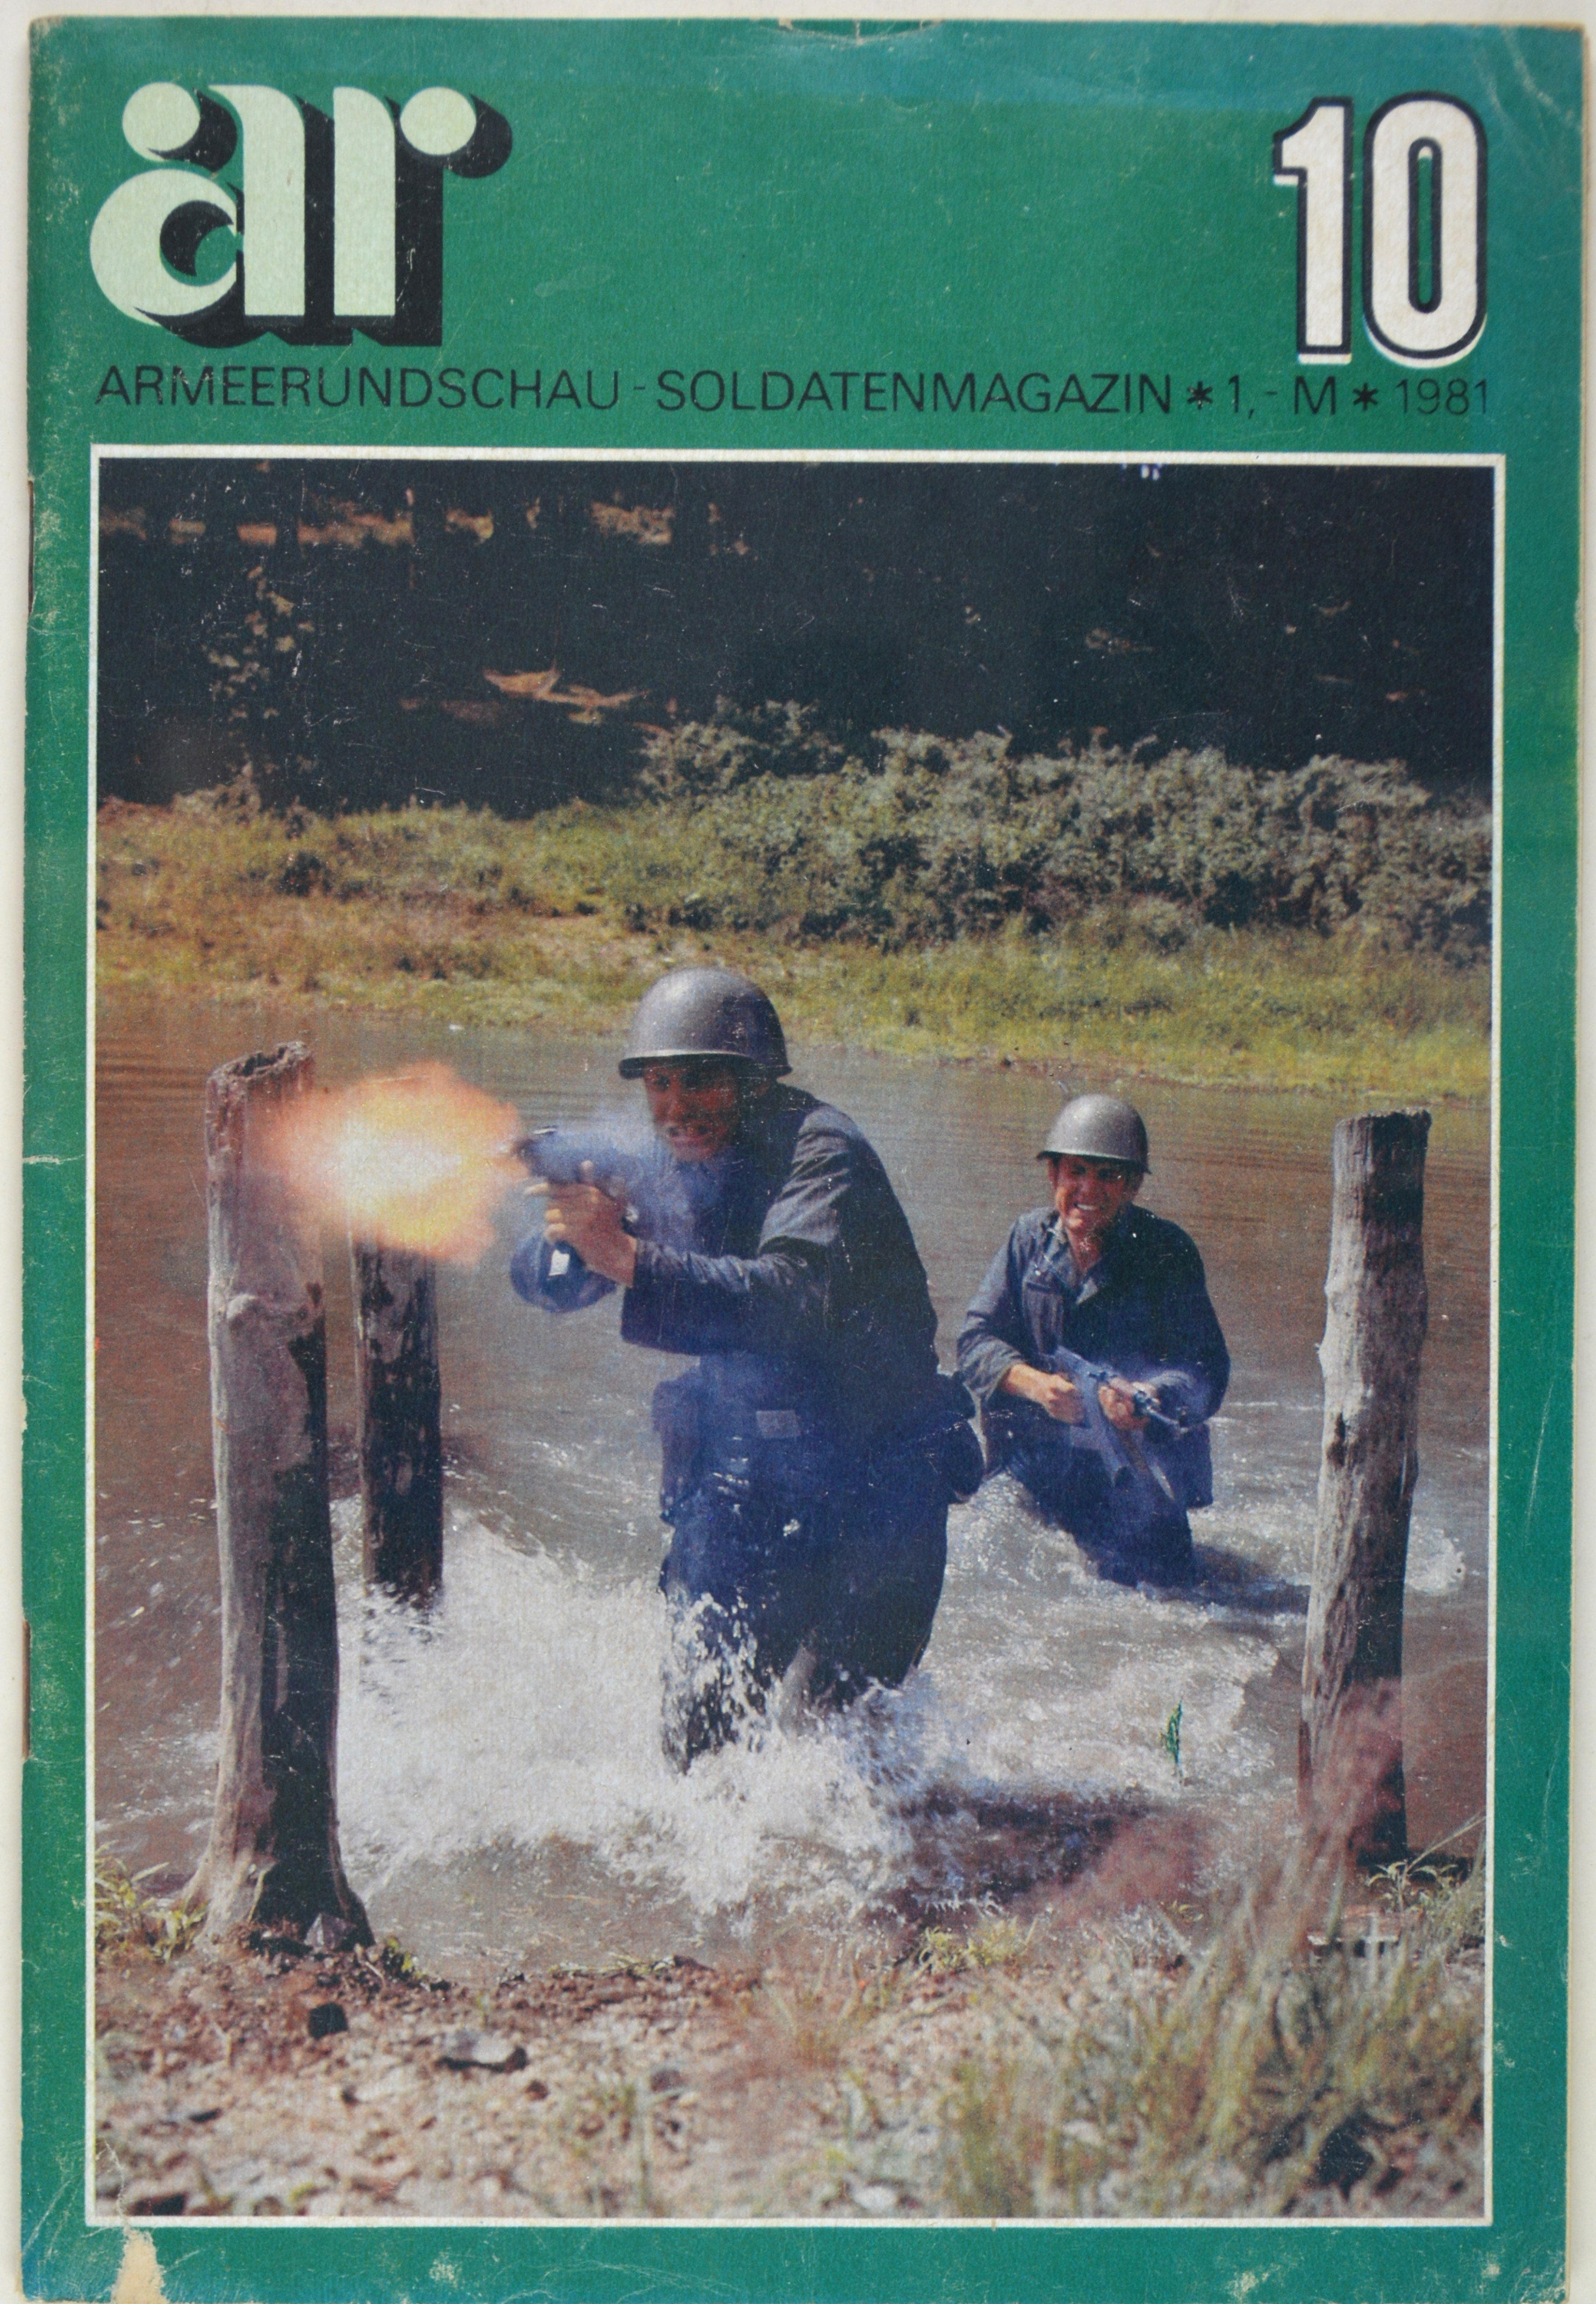 Armeerundschau - Soldatenmagazin (1981), Heft 10 (DDR Geschichtsmuseum im Dokumentationszentrum Perleberg CC BY-SA)